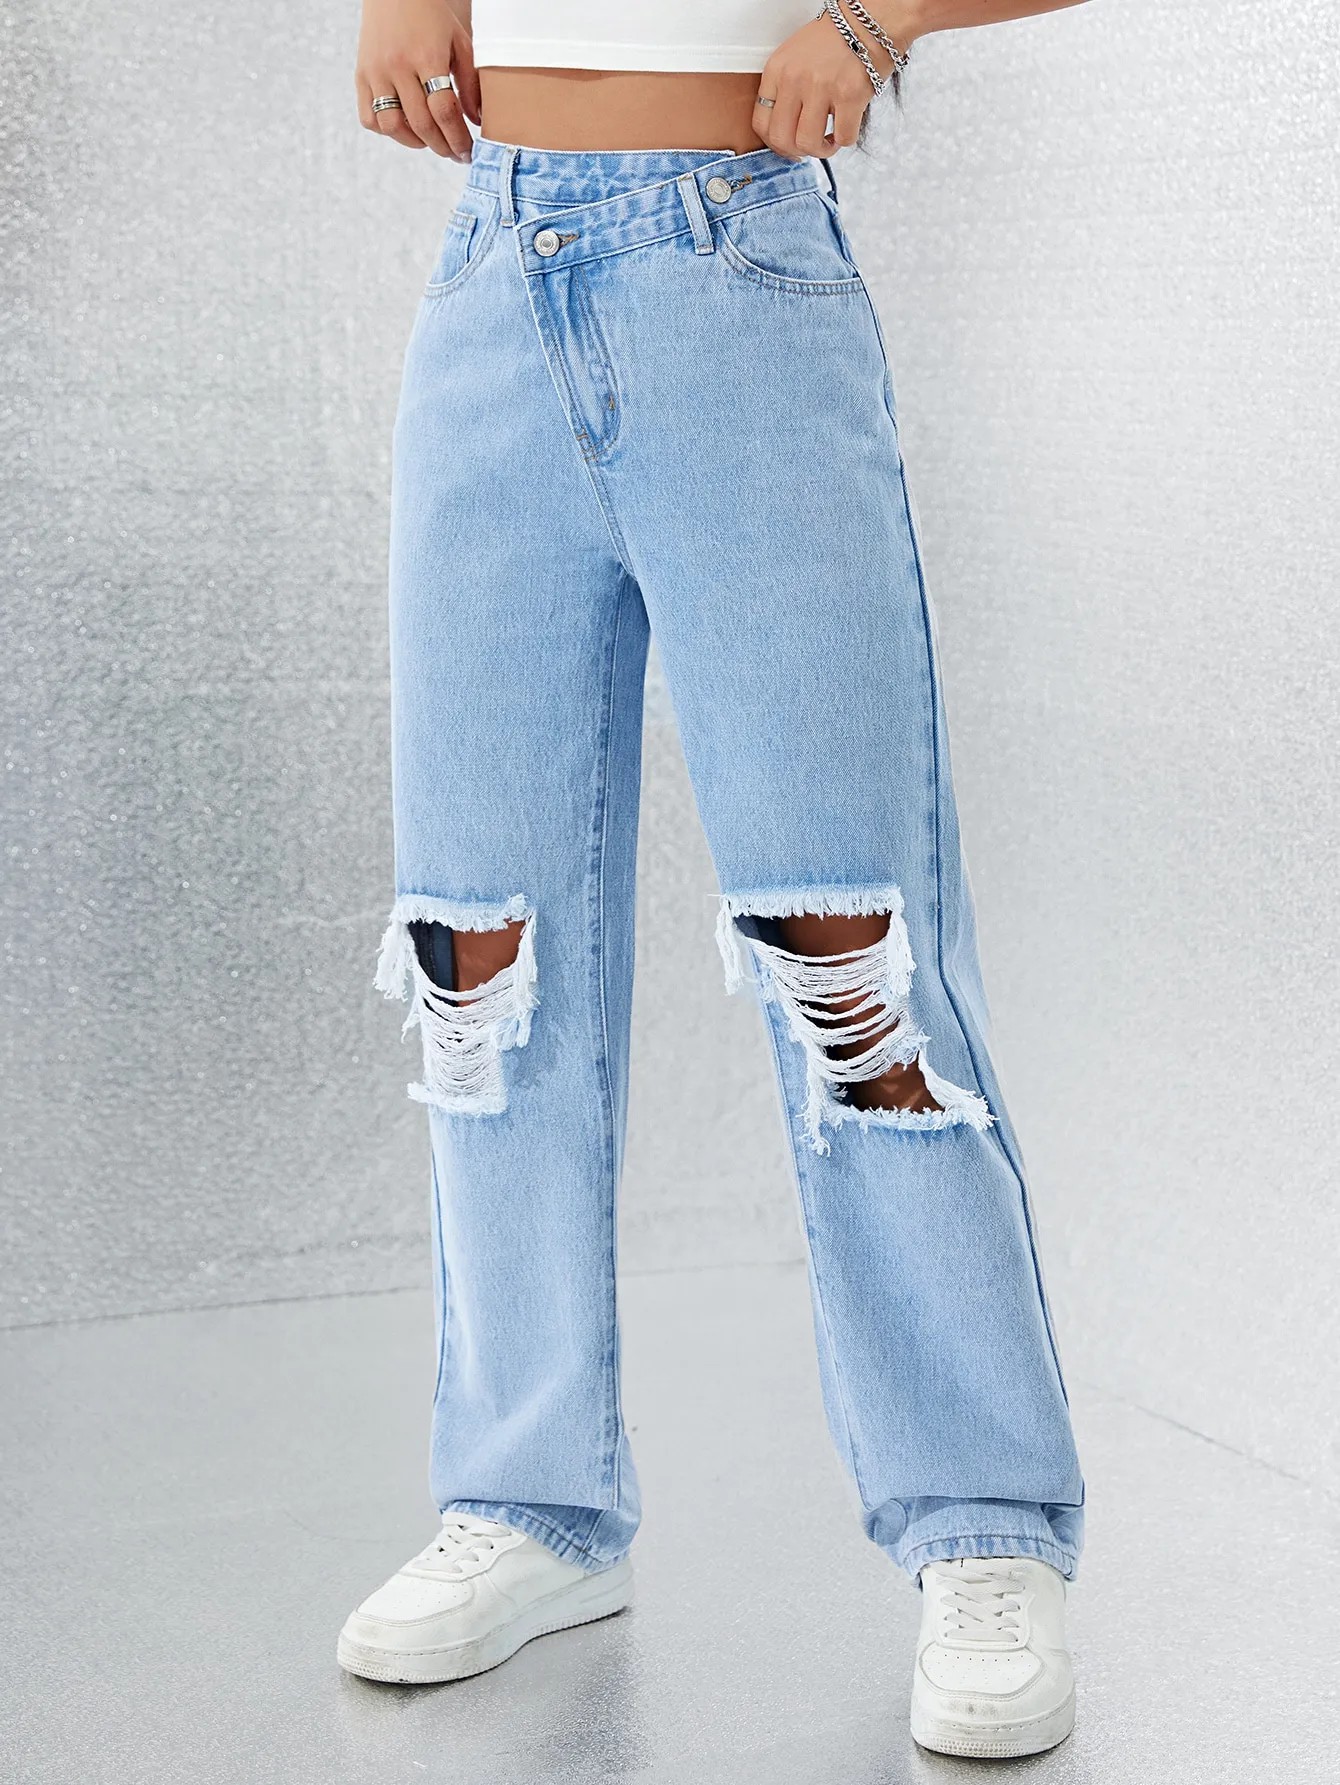 Asimmetrik bel öndürilen zawod göni jeans ýyrtdy